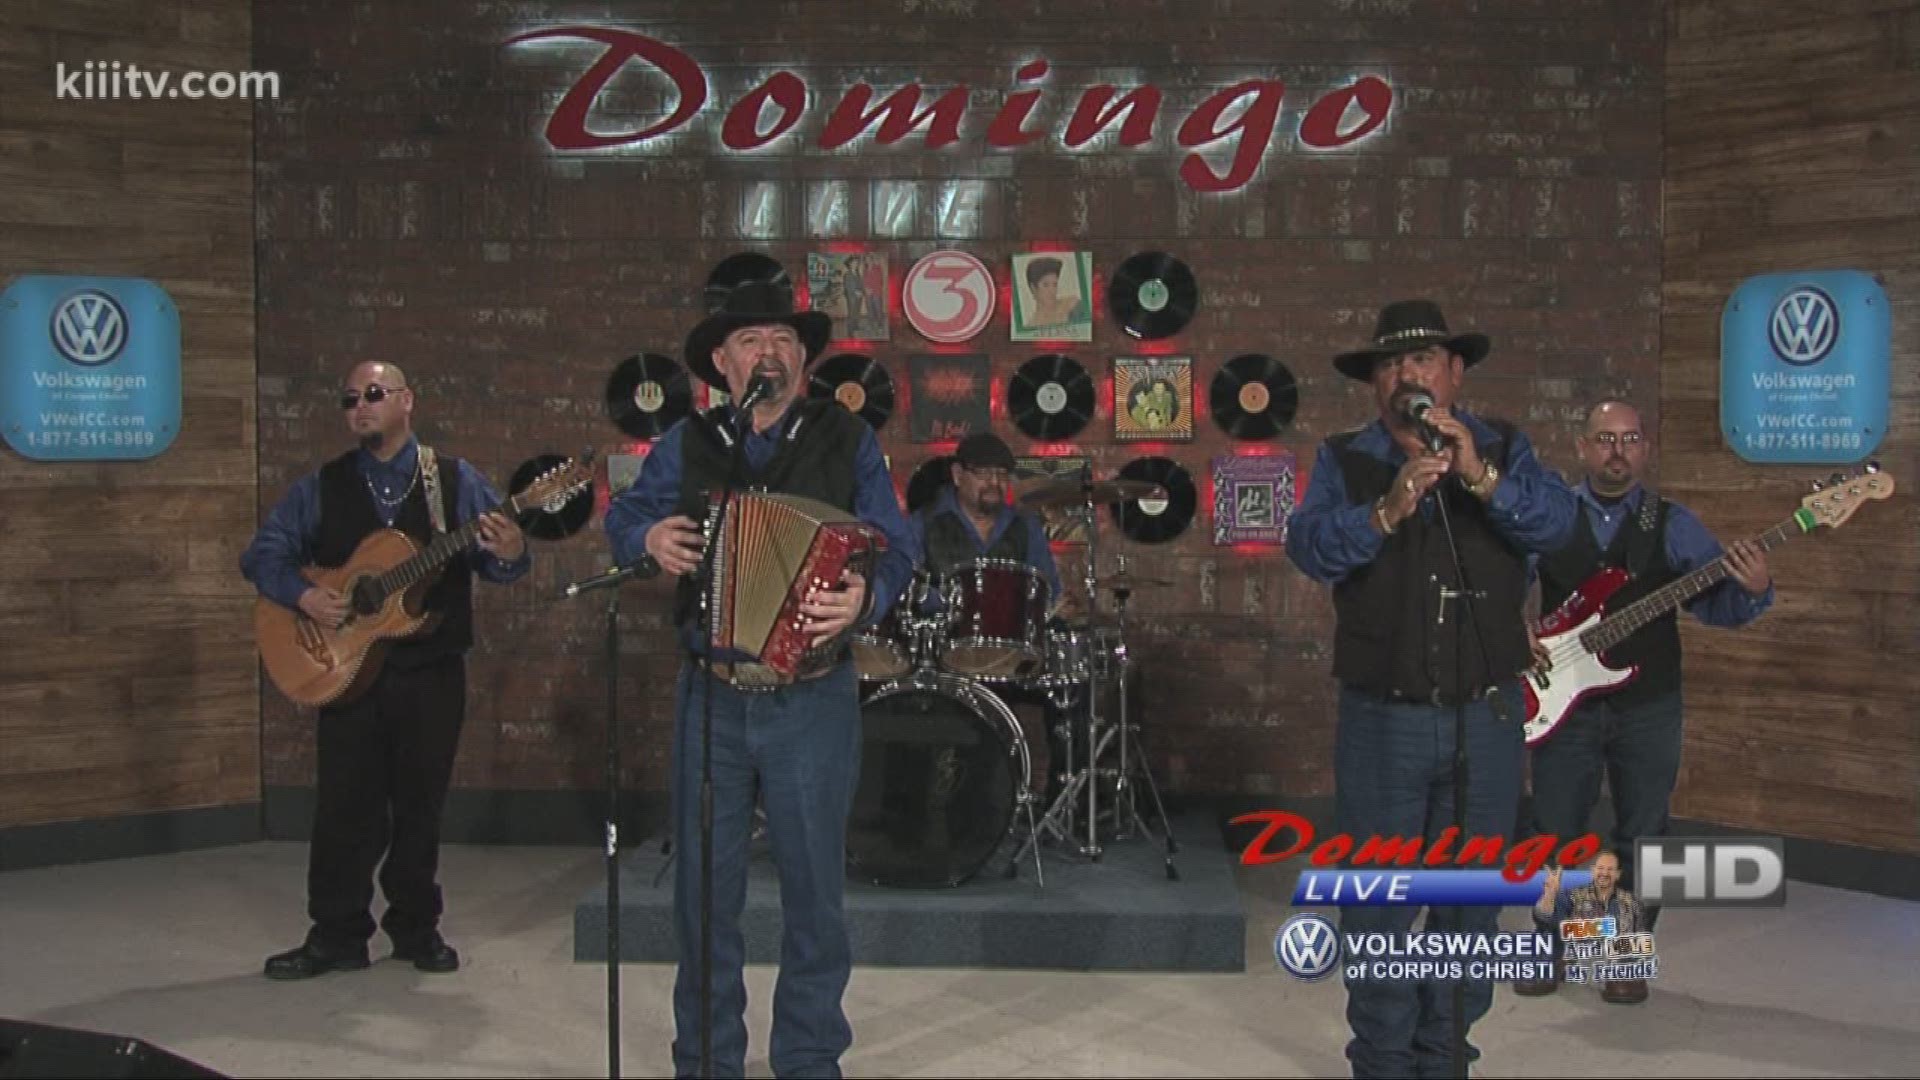 Los D Boys performing "Indita Mia" on Domingo Live.